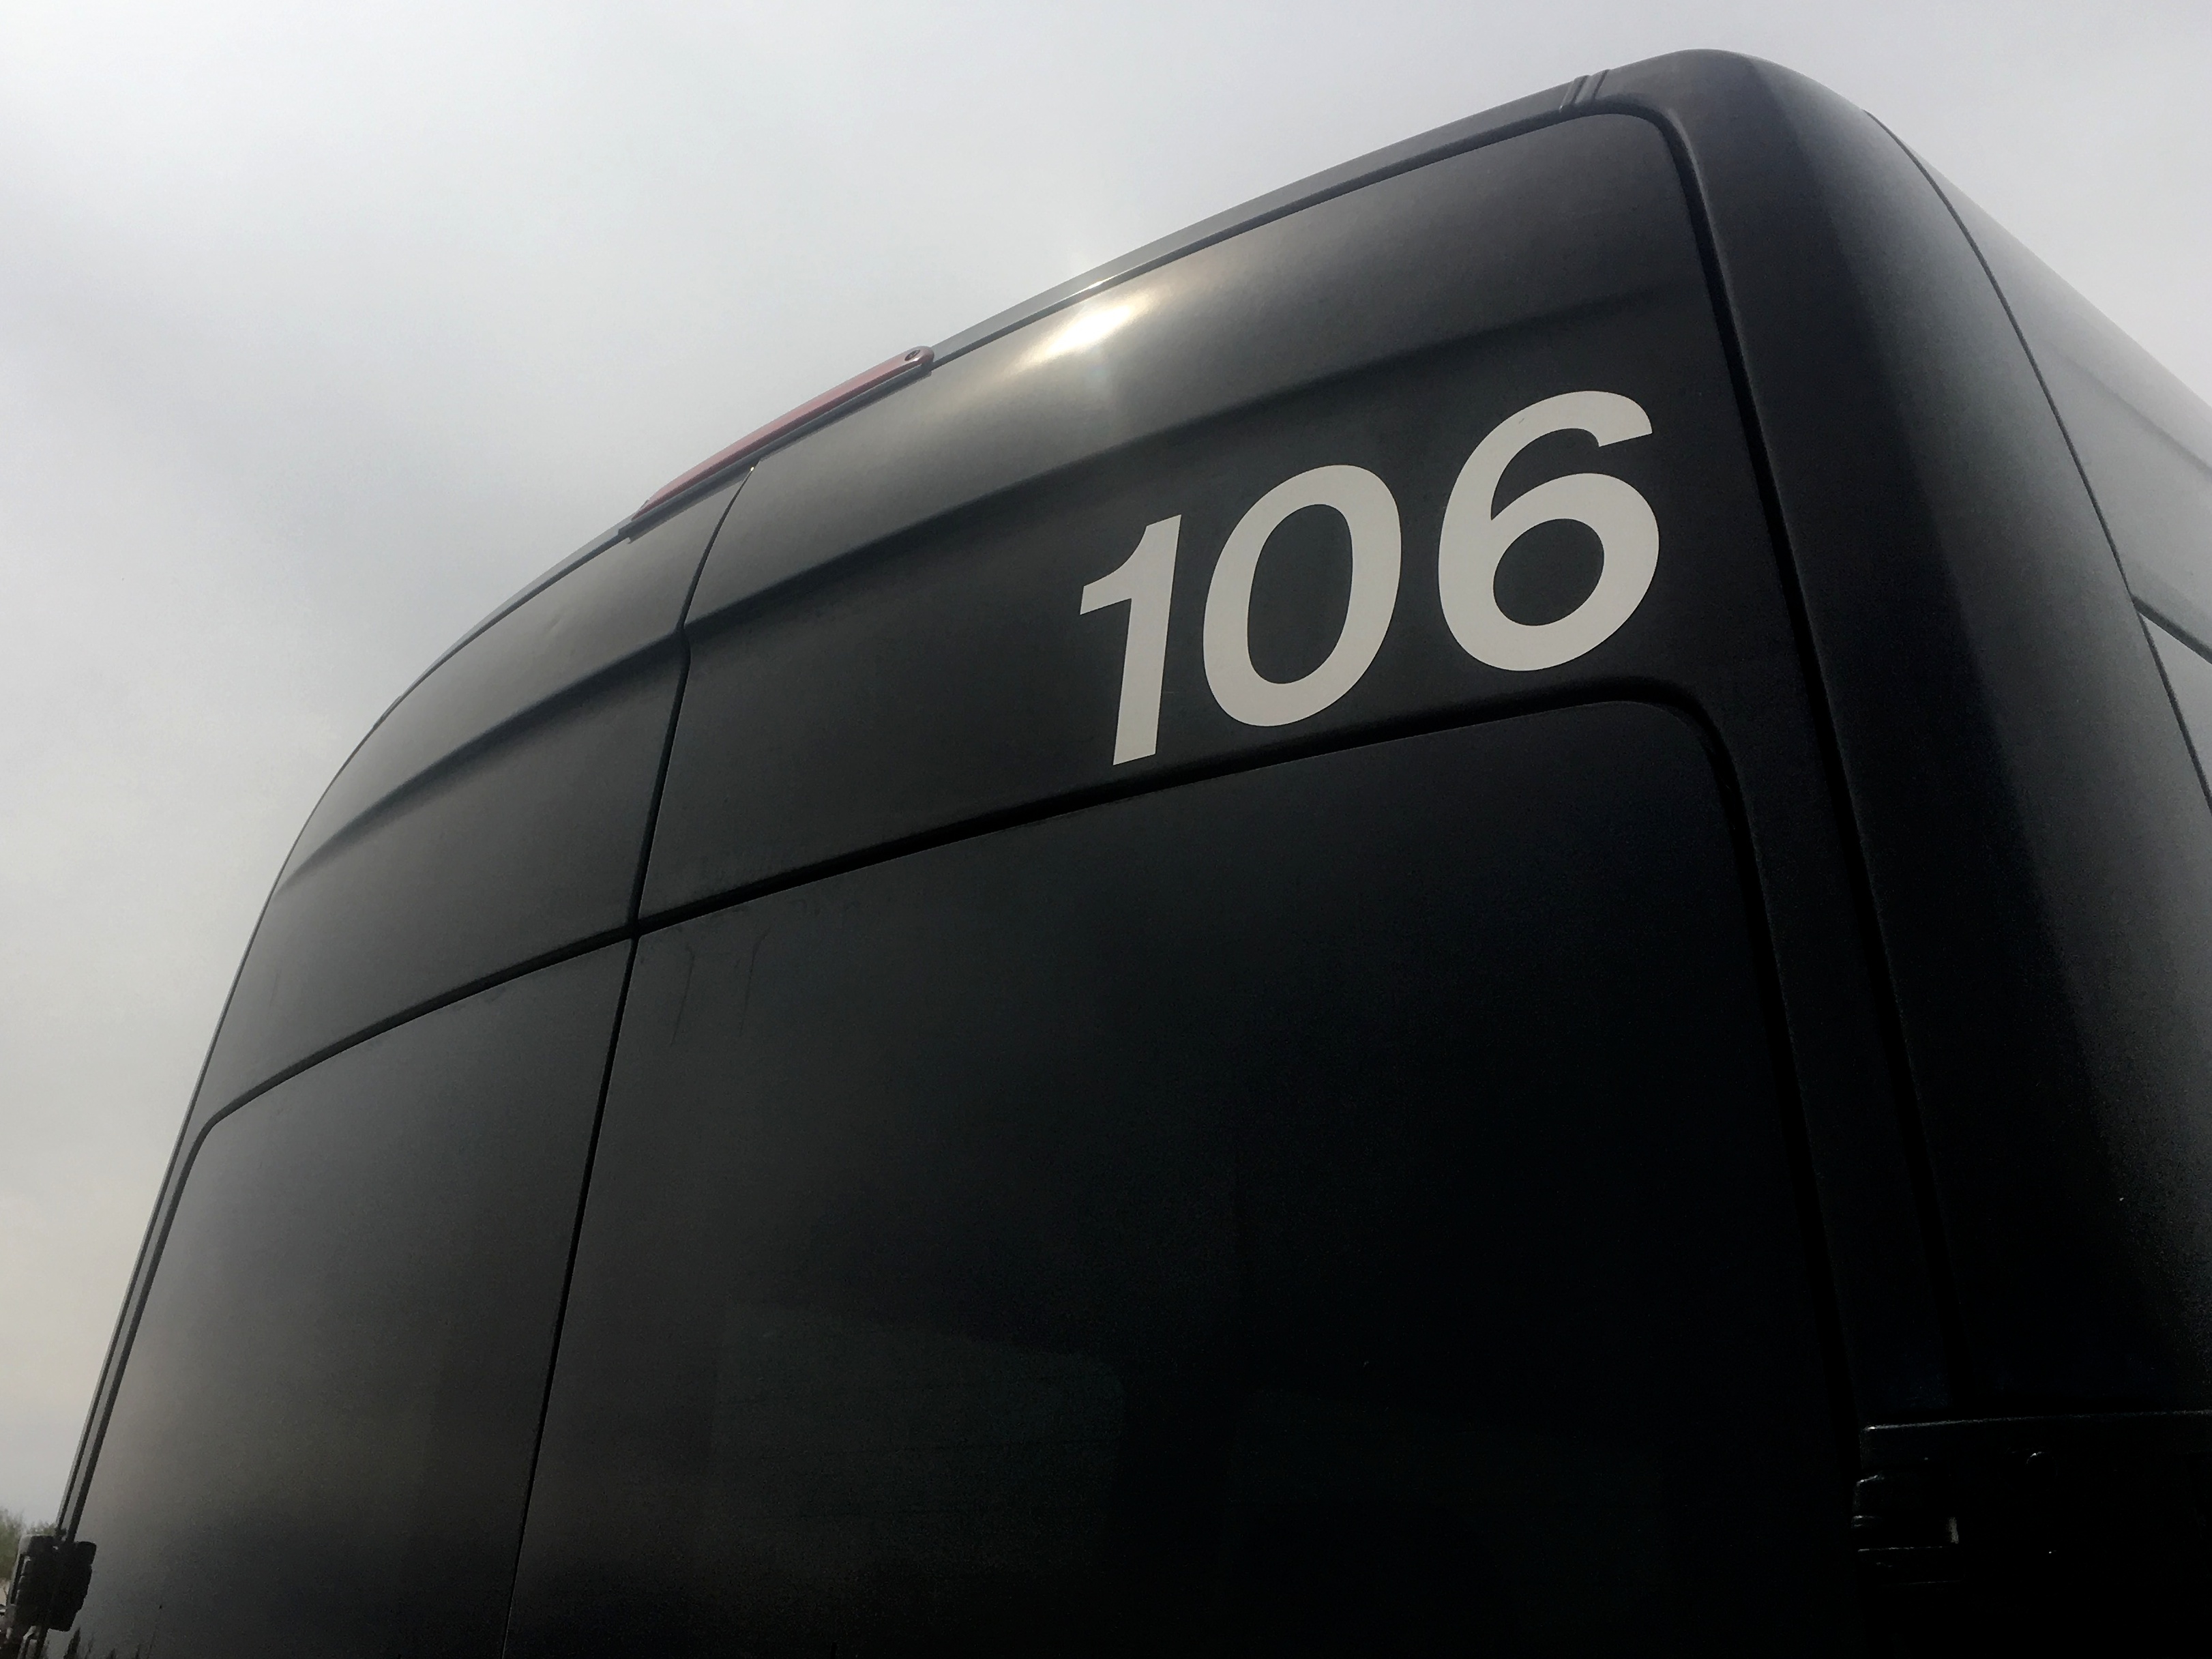 The ds106 secret bus photo